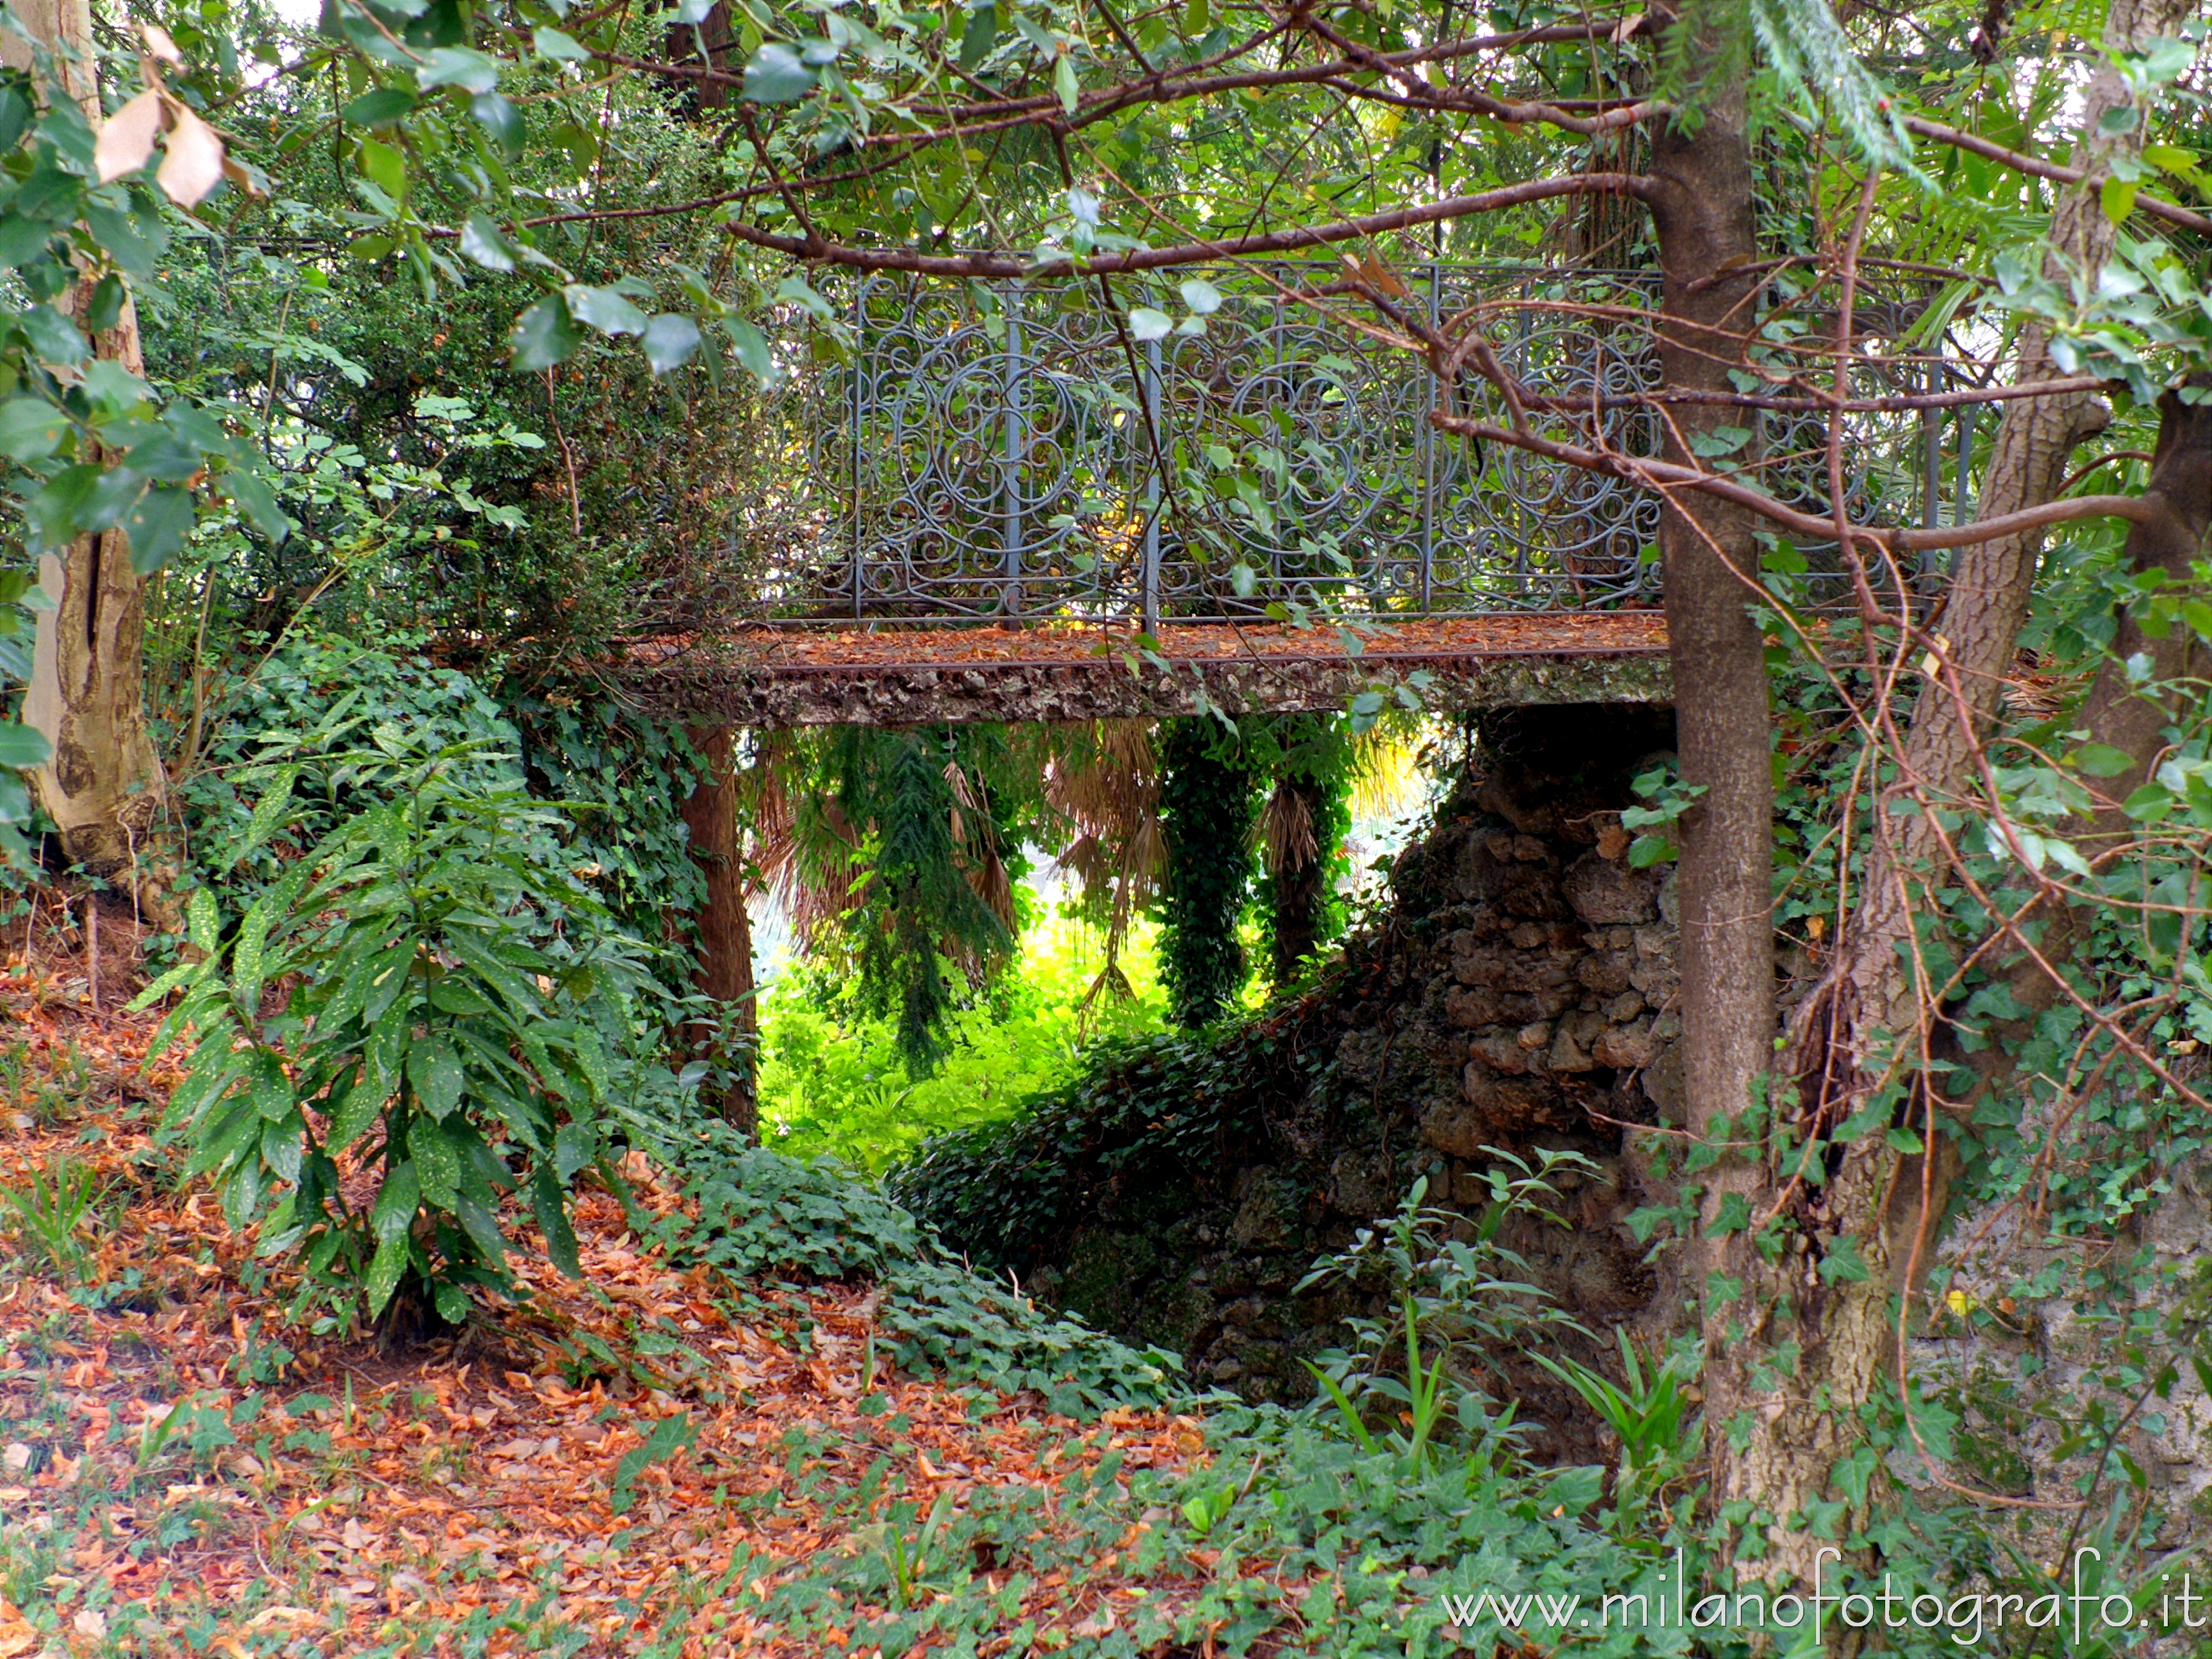 Sirtori (Lecco): Ponticello con balaustre in ferro battuto nel parco di Villa Besana - Sirtori (Lecco)